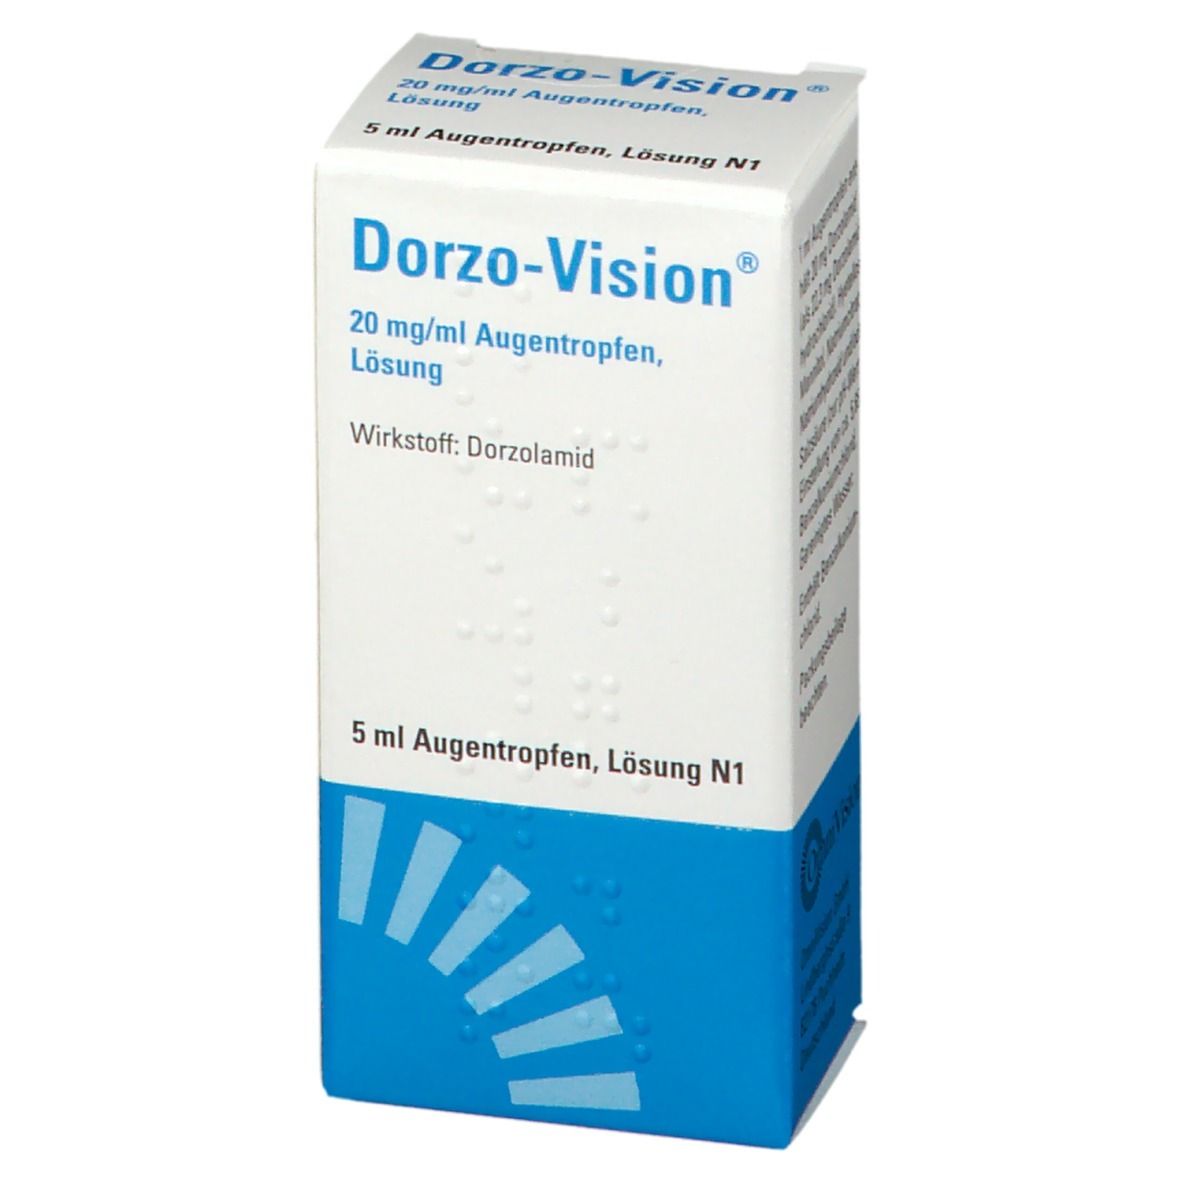 Dorzo-Vision® 20 mg/ml